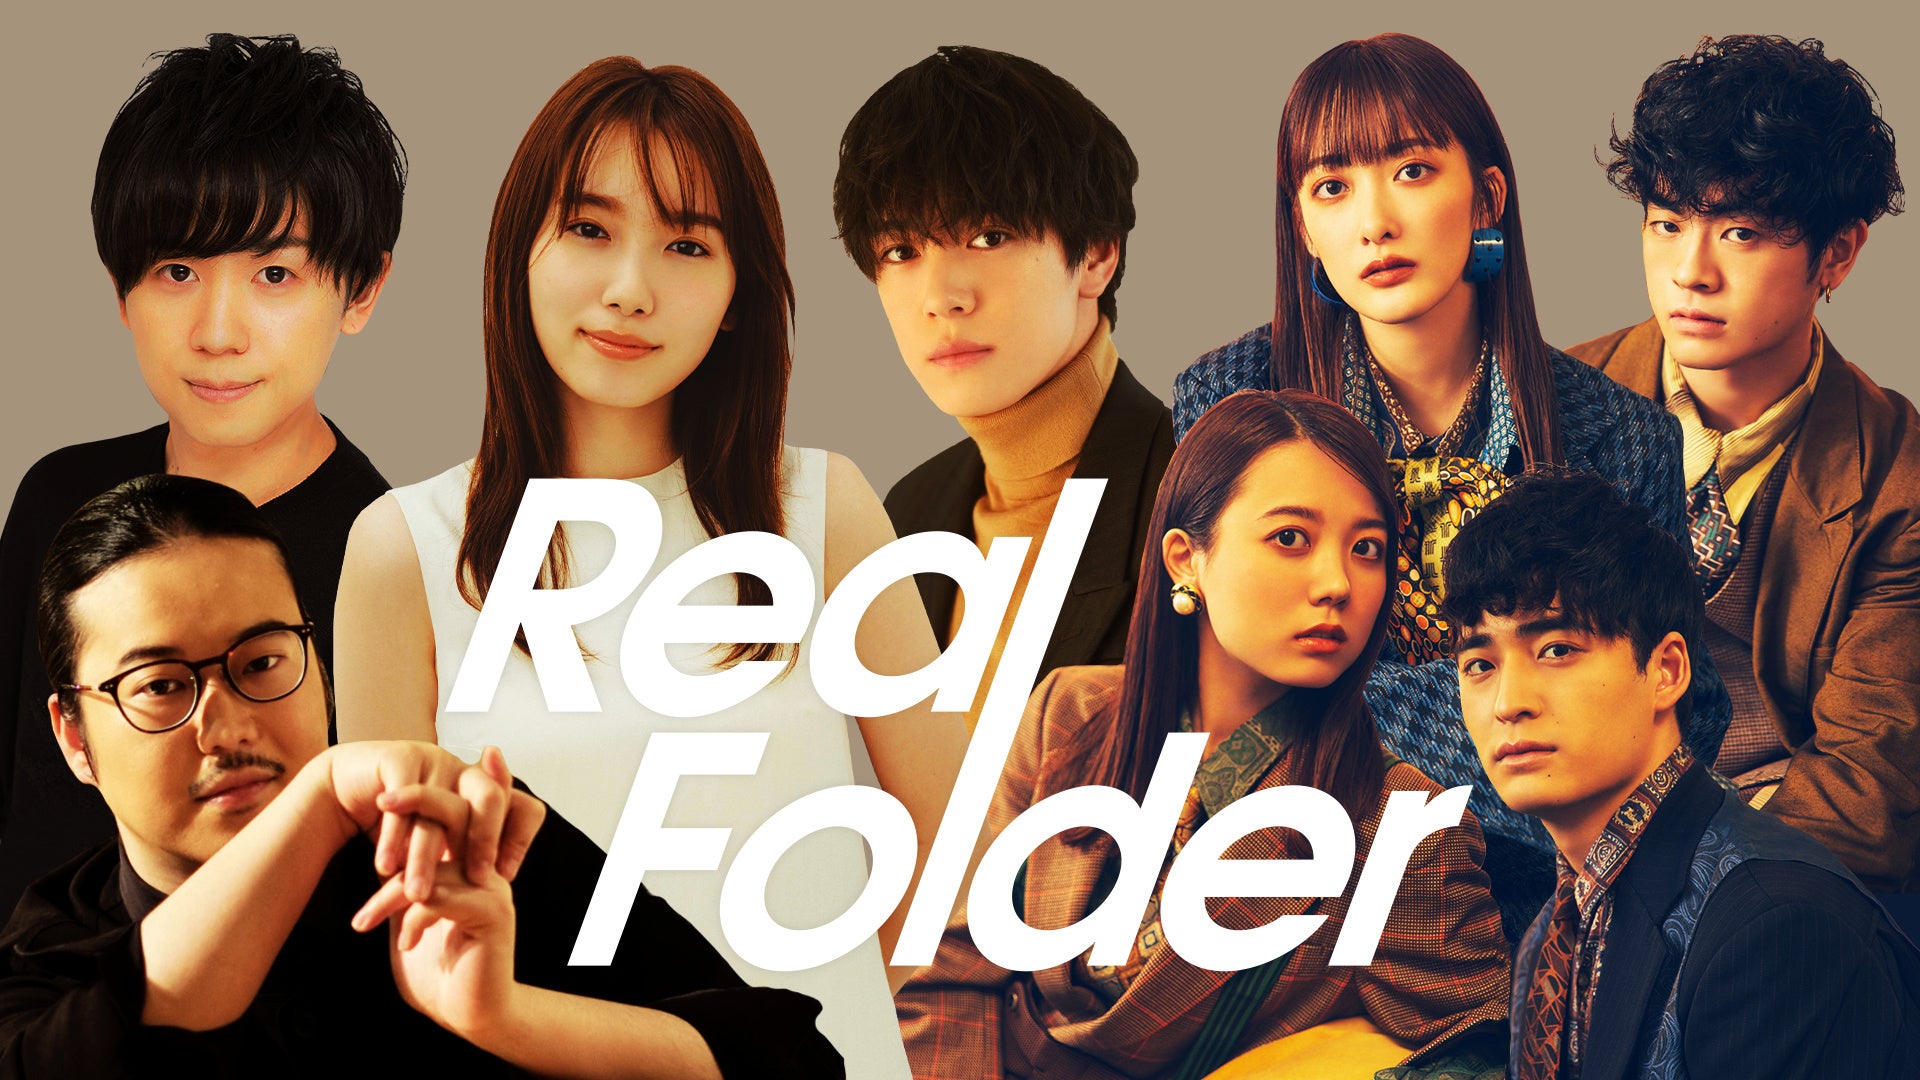 多彩なスターたちの“リアル”に迫るドキュメンタリー『Real Folder』Season2第2弾は声優・山下大輝、声優界の若きスター